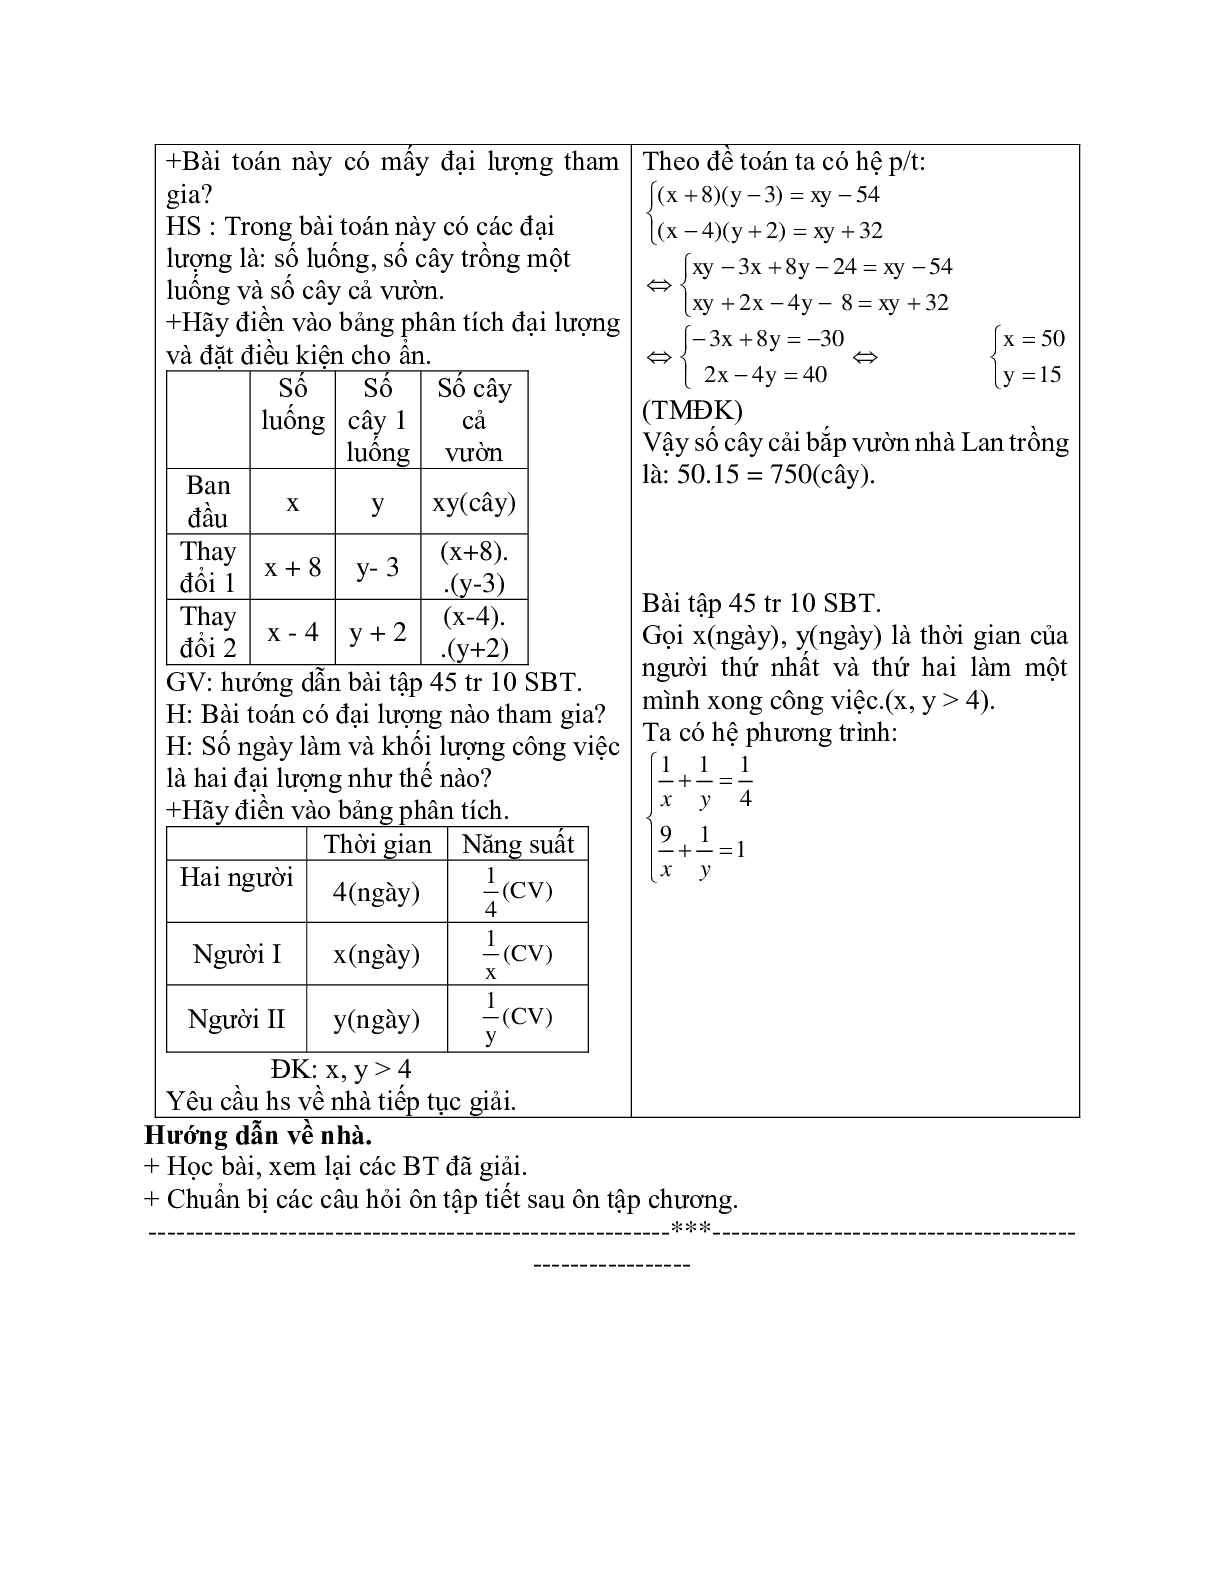 Giáo án Giải bài toán bằng cách lập hệ phương trình (tiếp) (2023) mới nhất - Toán 9 (trang 3)